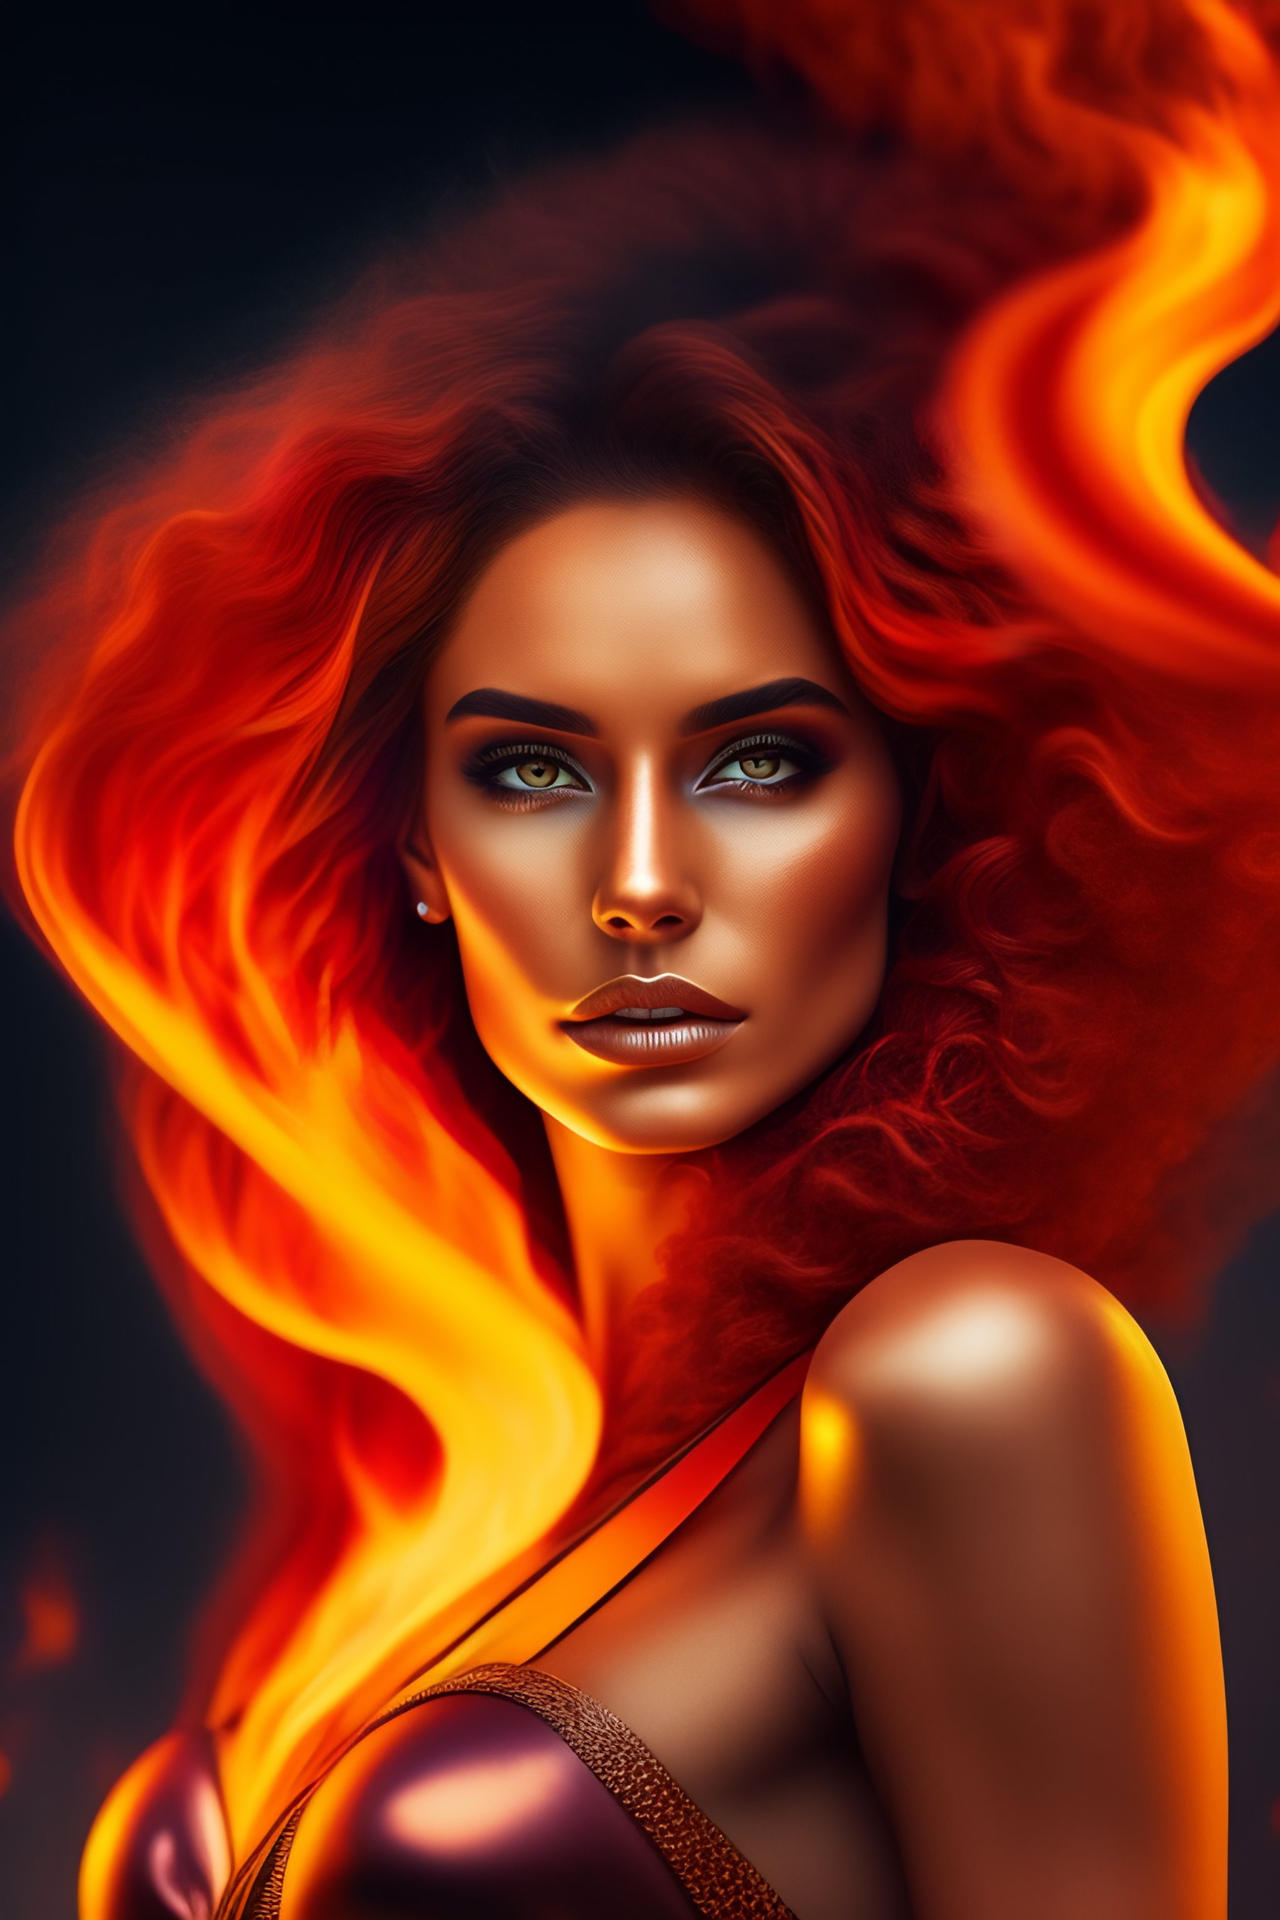 Fire Girl by StriptheStars on DeviantArt